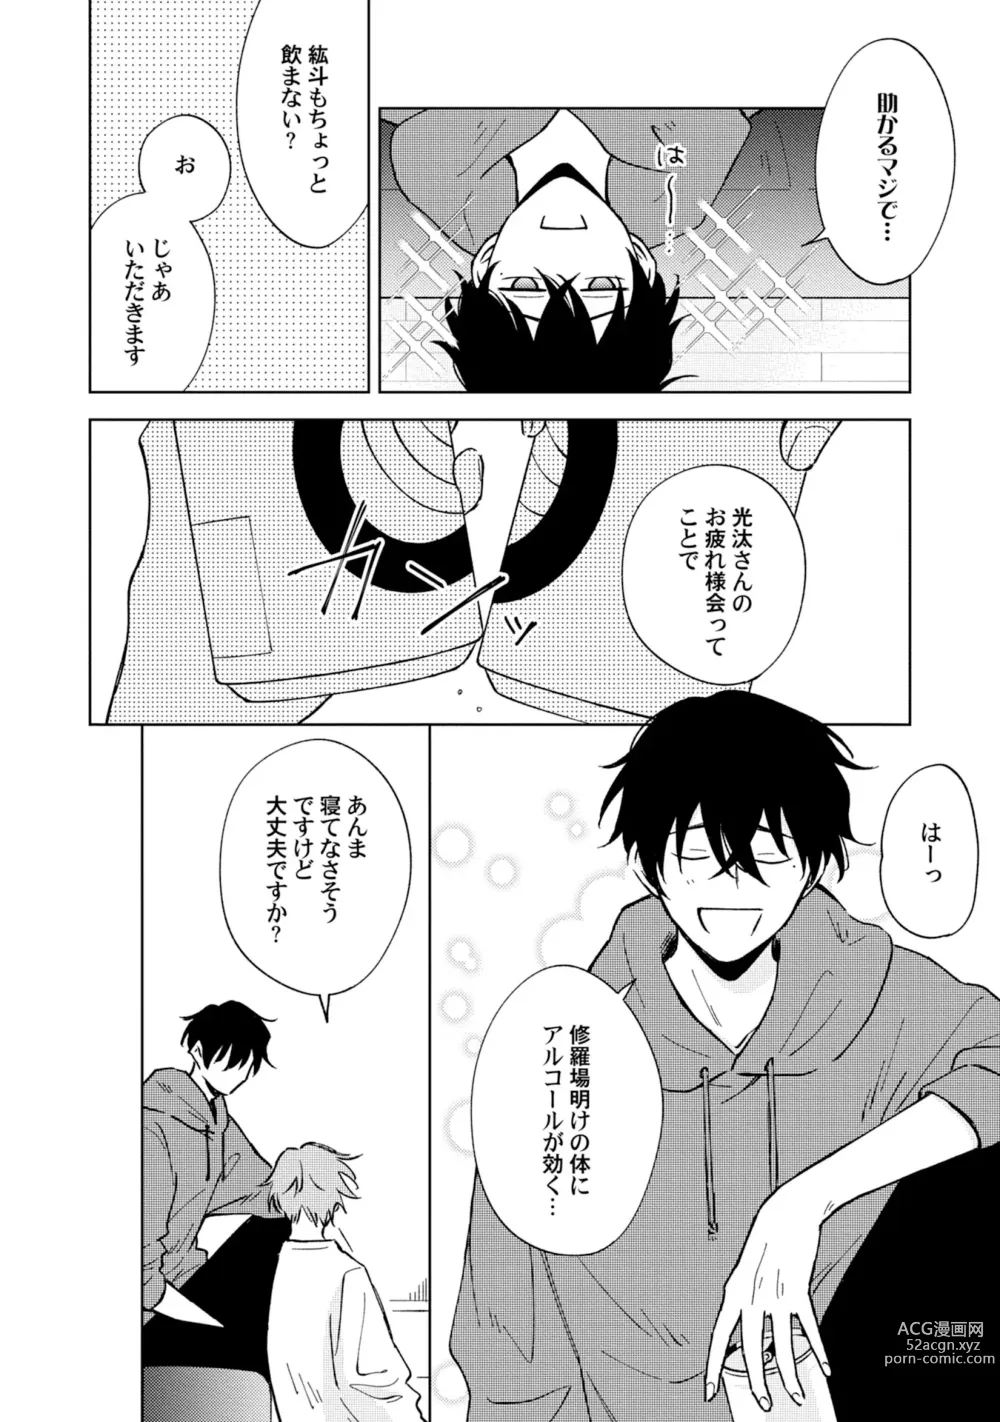 Page 20 of manga Toho 3-byou no Trouble Love Room 3